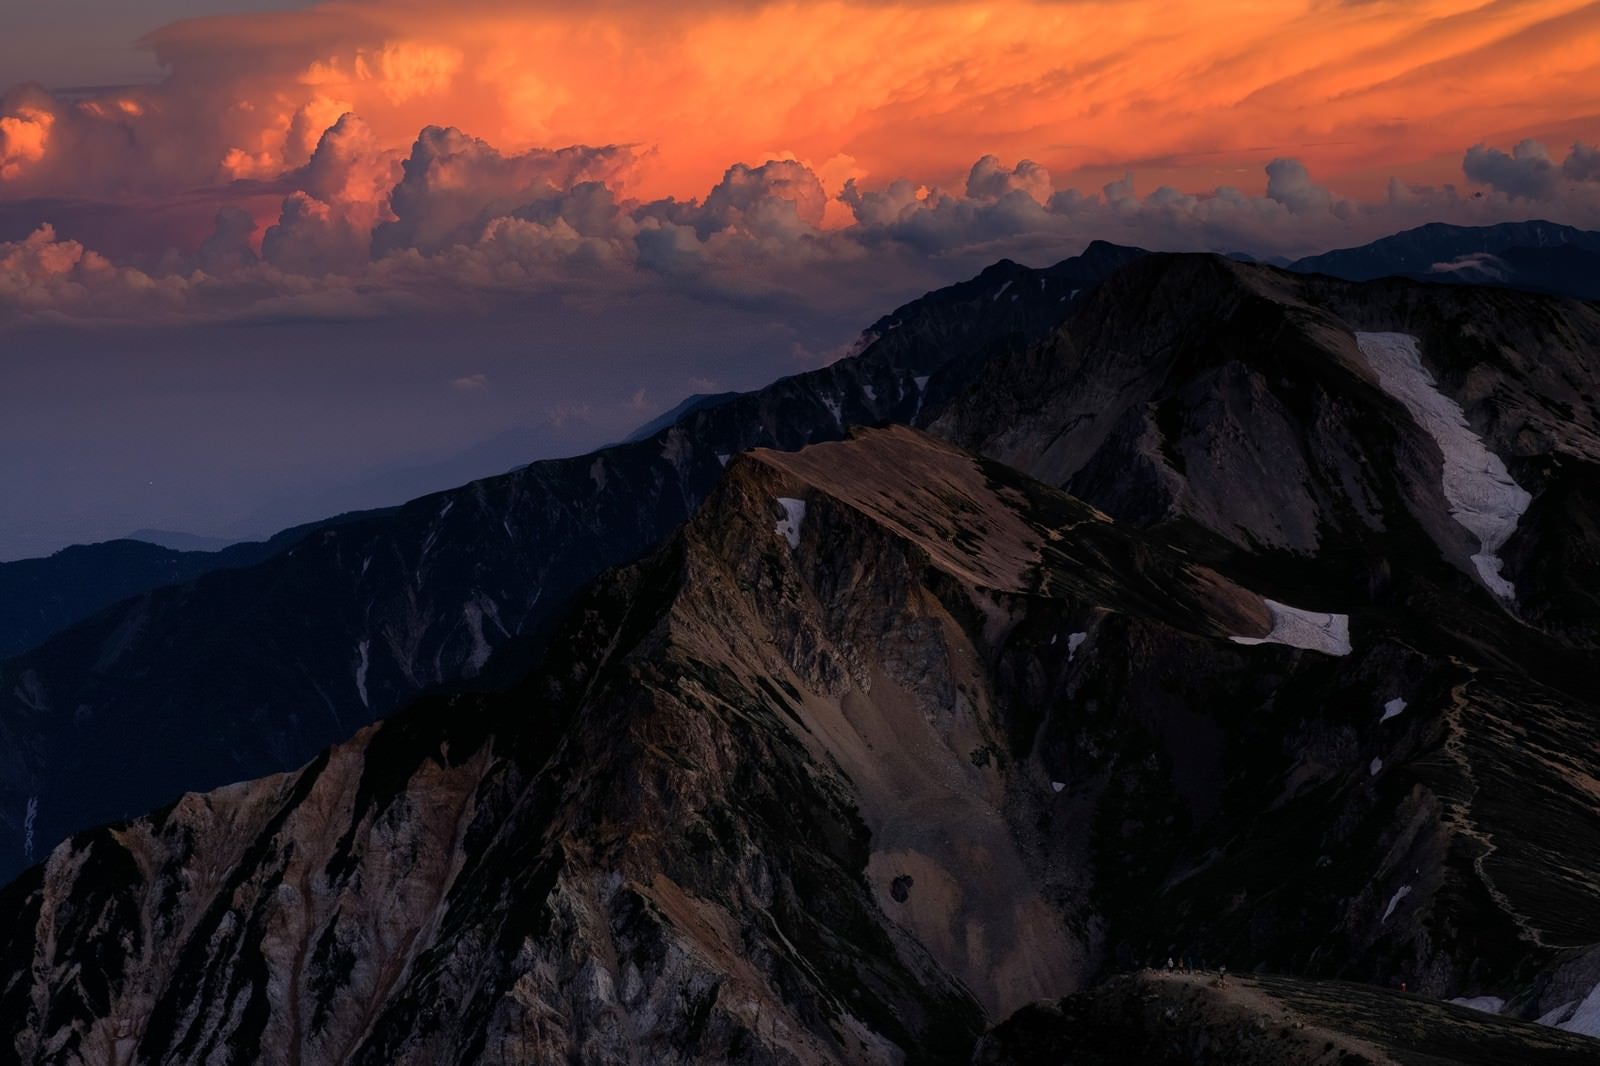 「杓子岳と白馬鑓ヶ岳の夕焼け」の写真